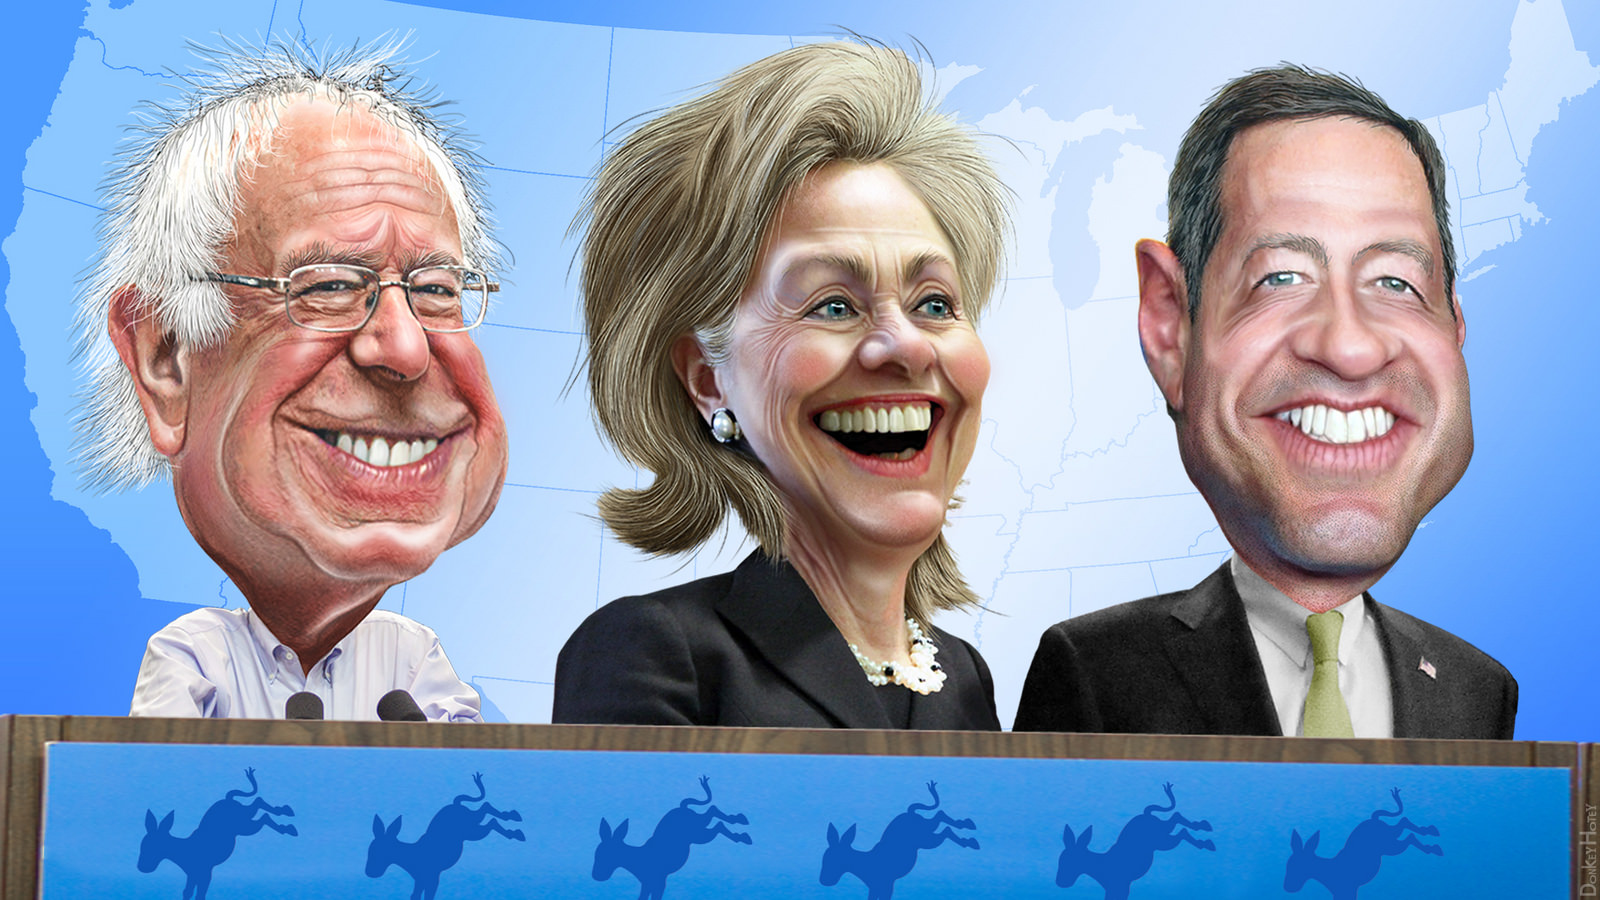 Bernie, Hillary & O'Malley